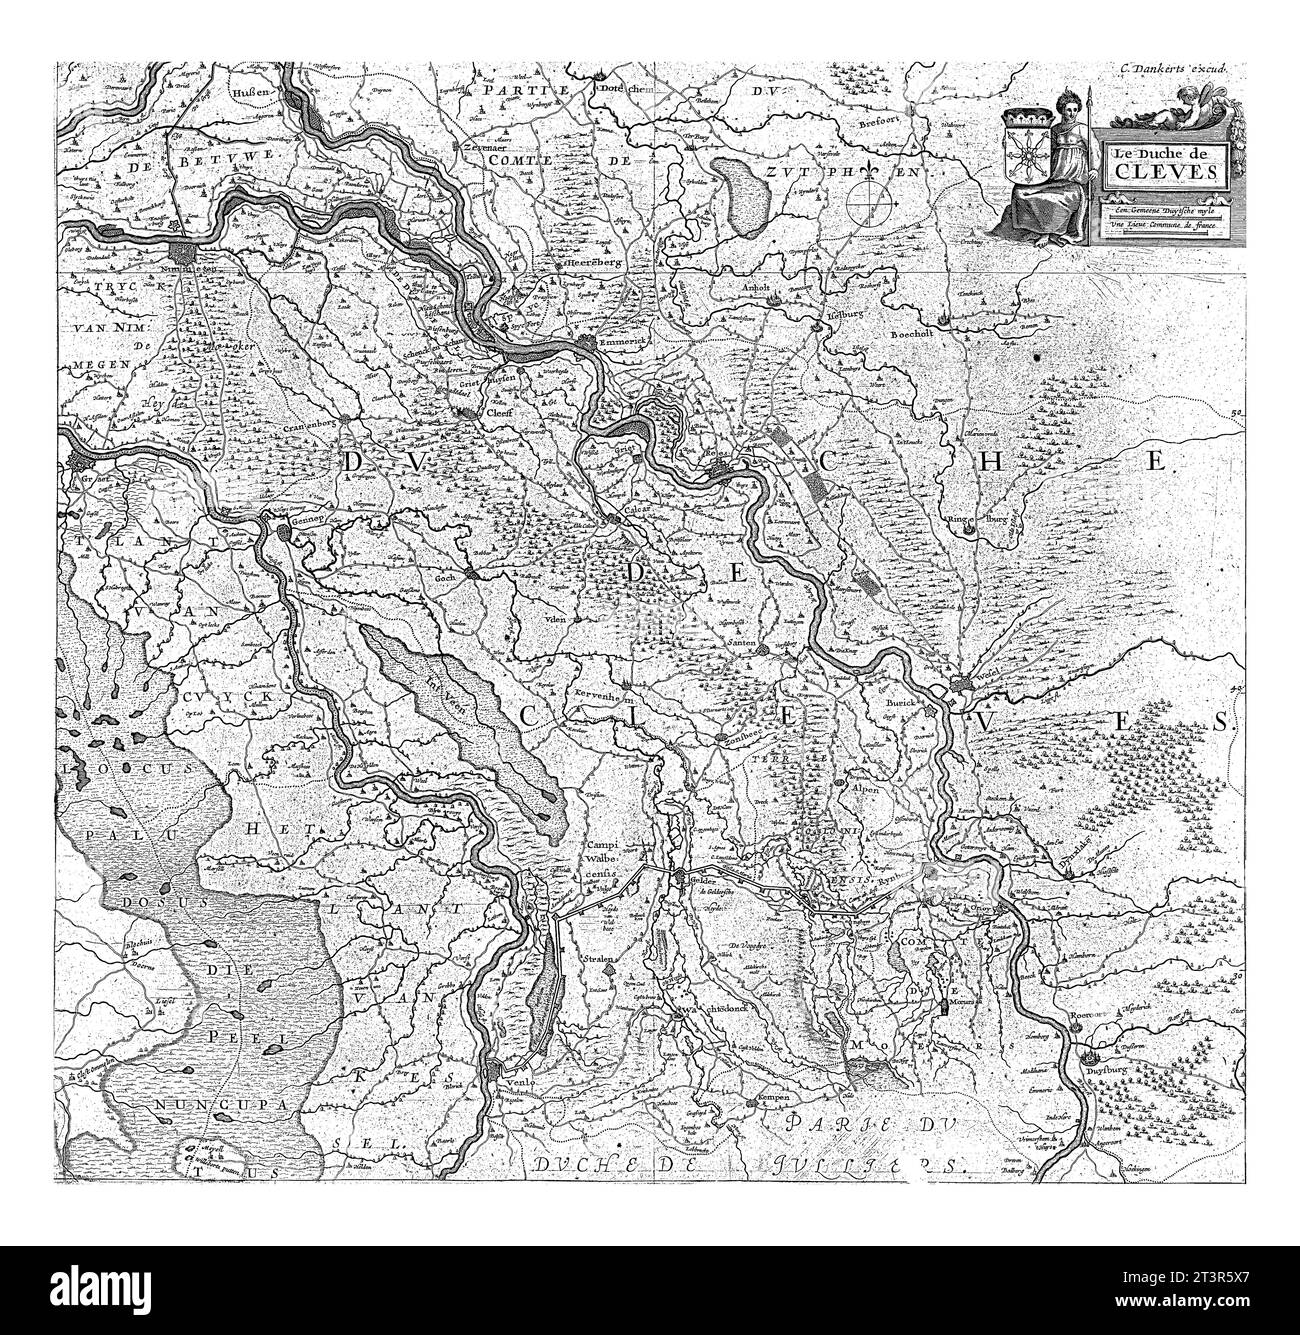 Karte des Herzogtums Kleve, Cornelis Danckerts, 1600 - 1699 Karte des Herzogtums Kleve mit den vielen Orten im Rheinbecken, aber auch Städten und Teufel Stockfoto